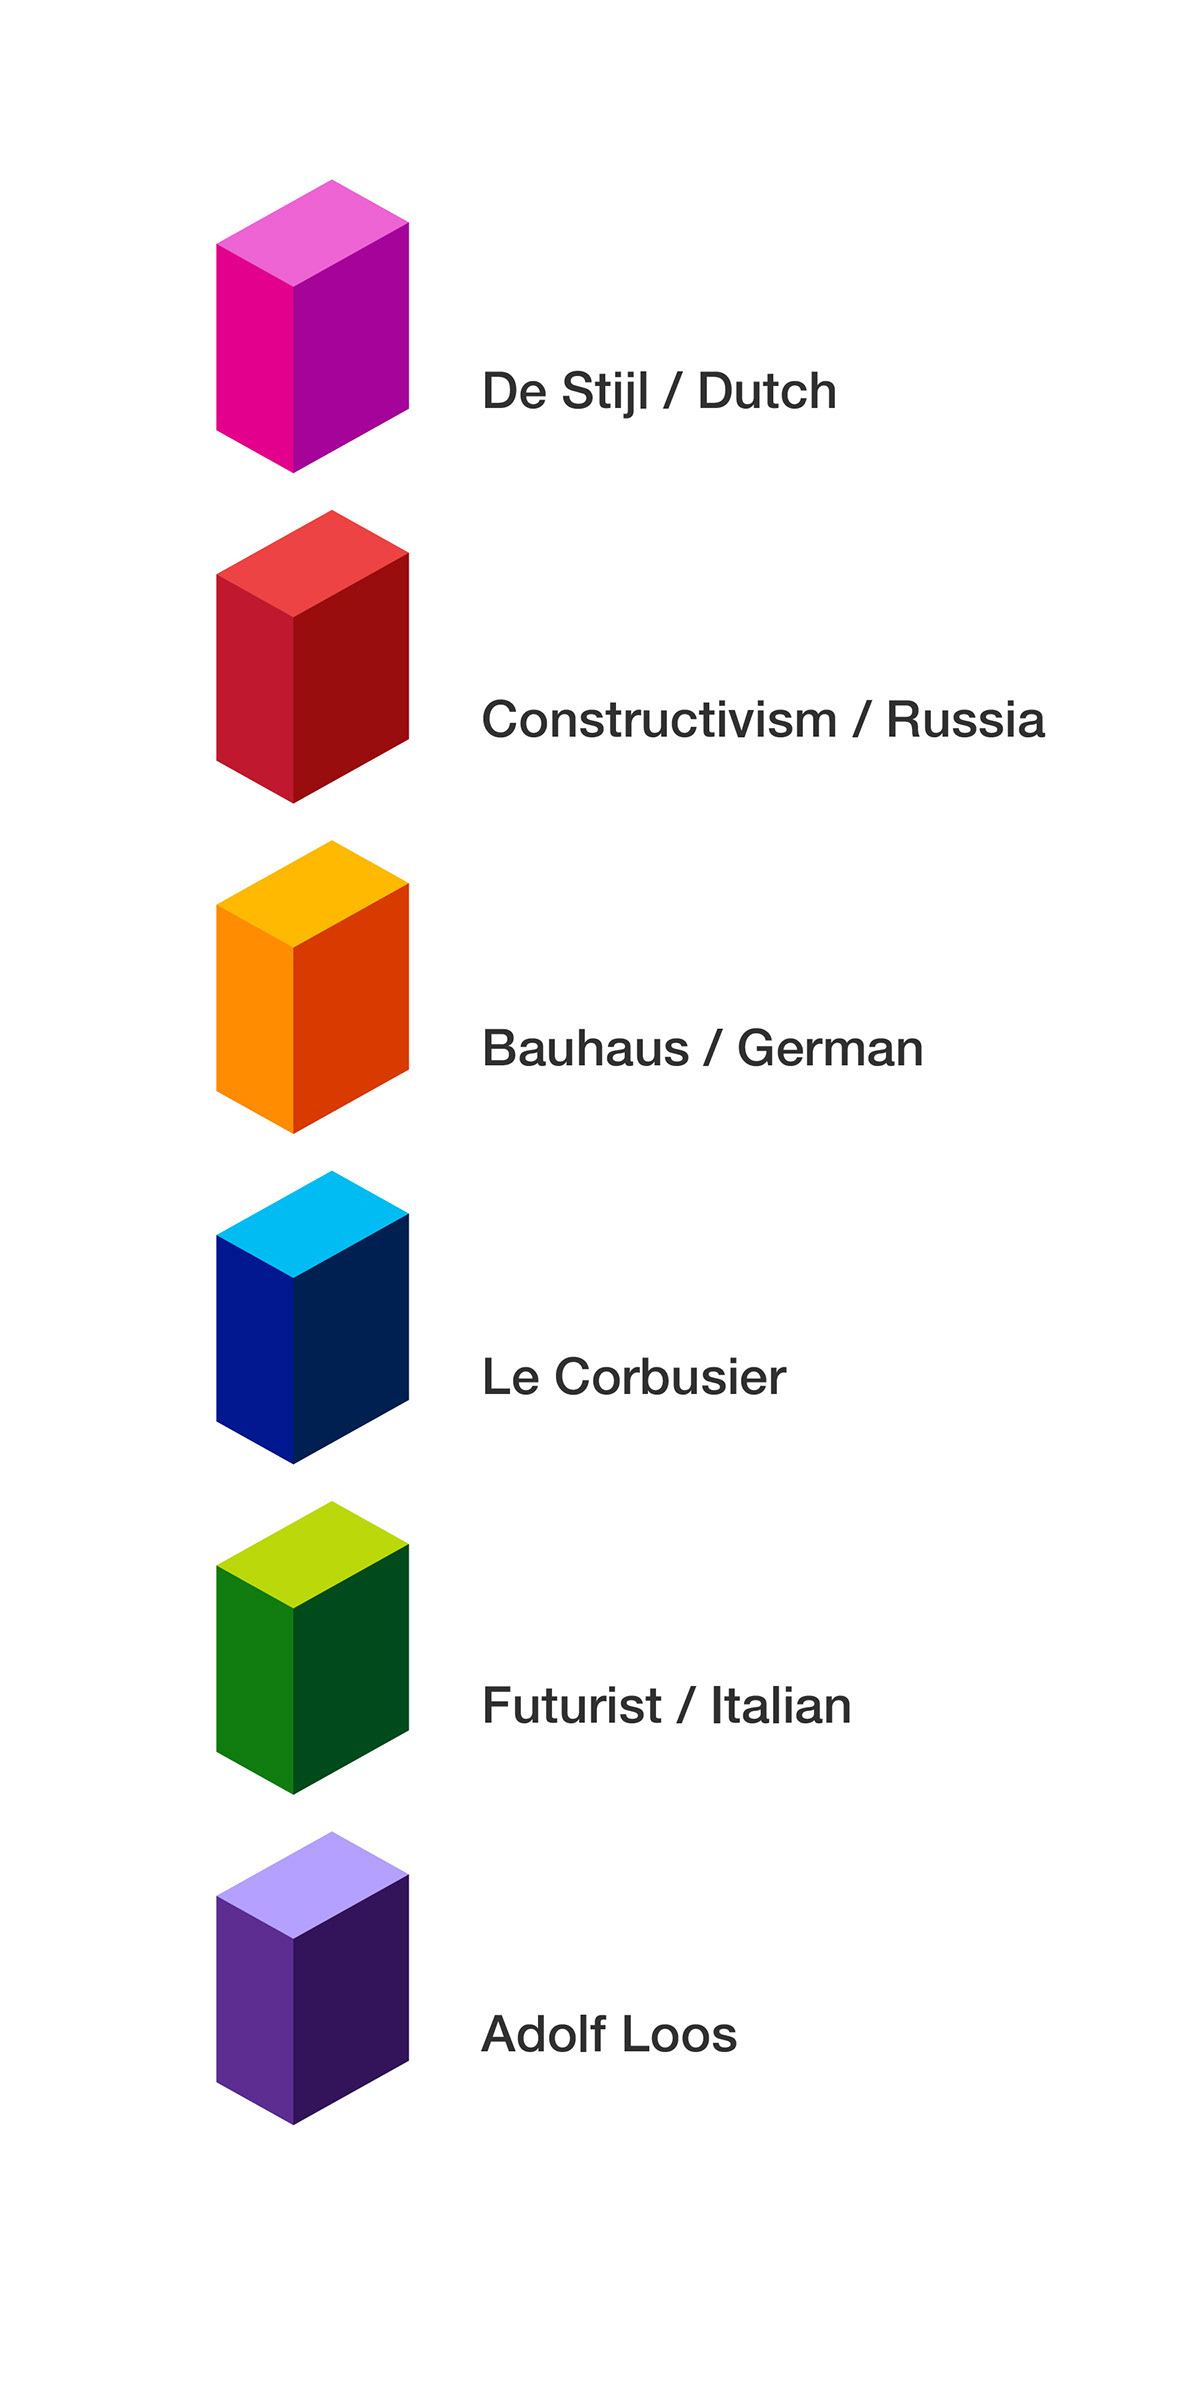 modernist Europe Corbusier de stijl bauhaus mies FUTURISM constructivism genealogy history